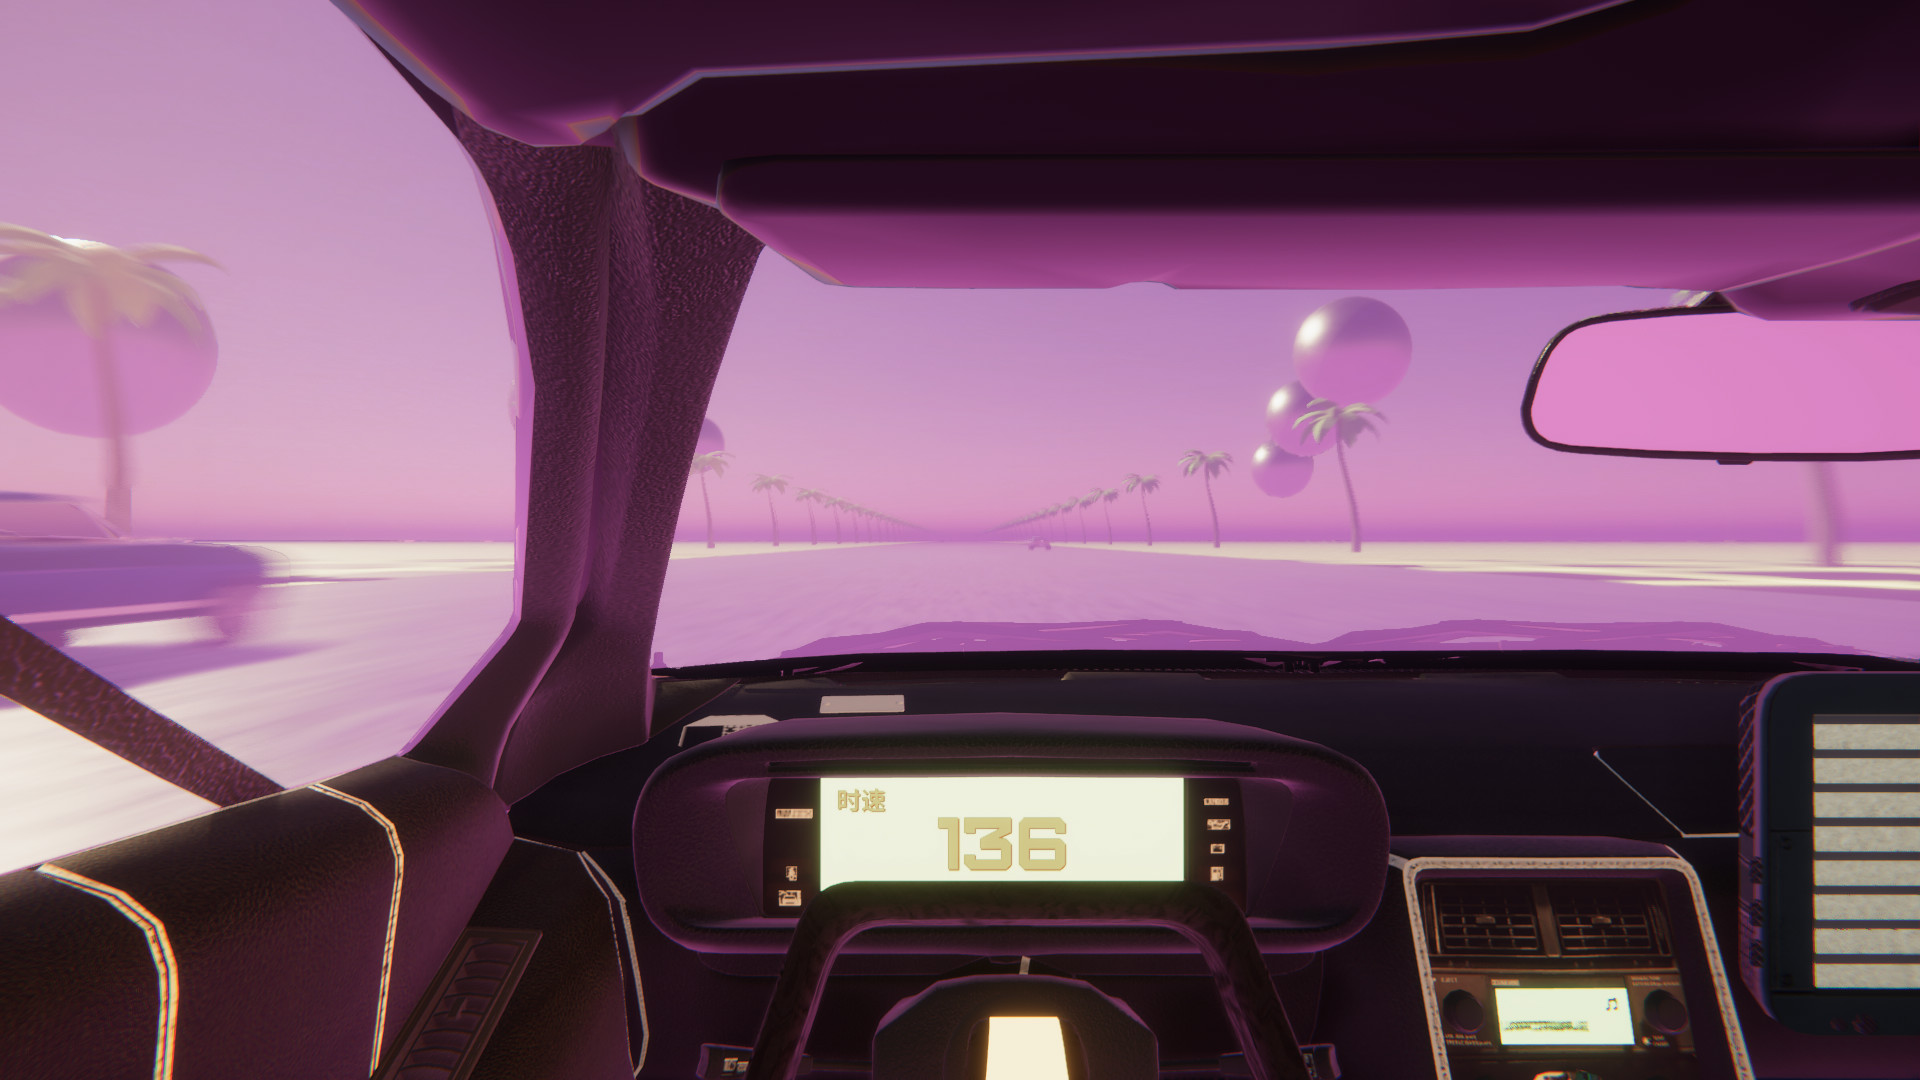 Vaporwave Road VR screenshot